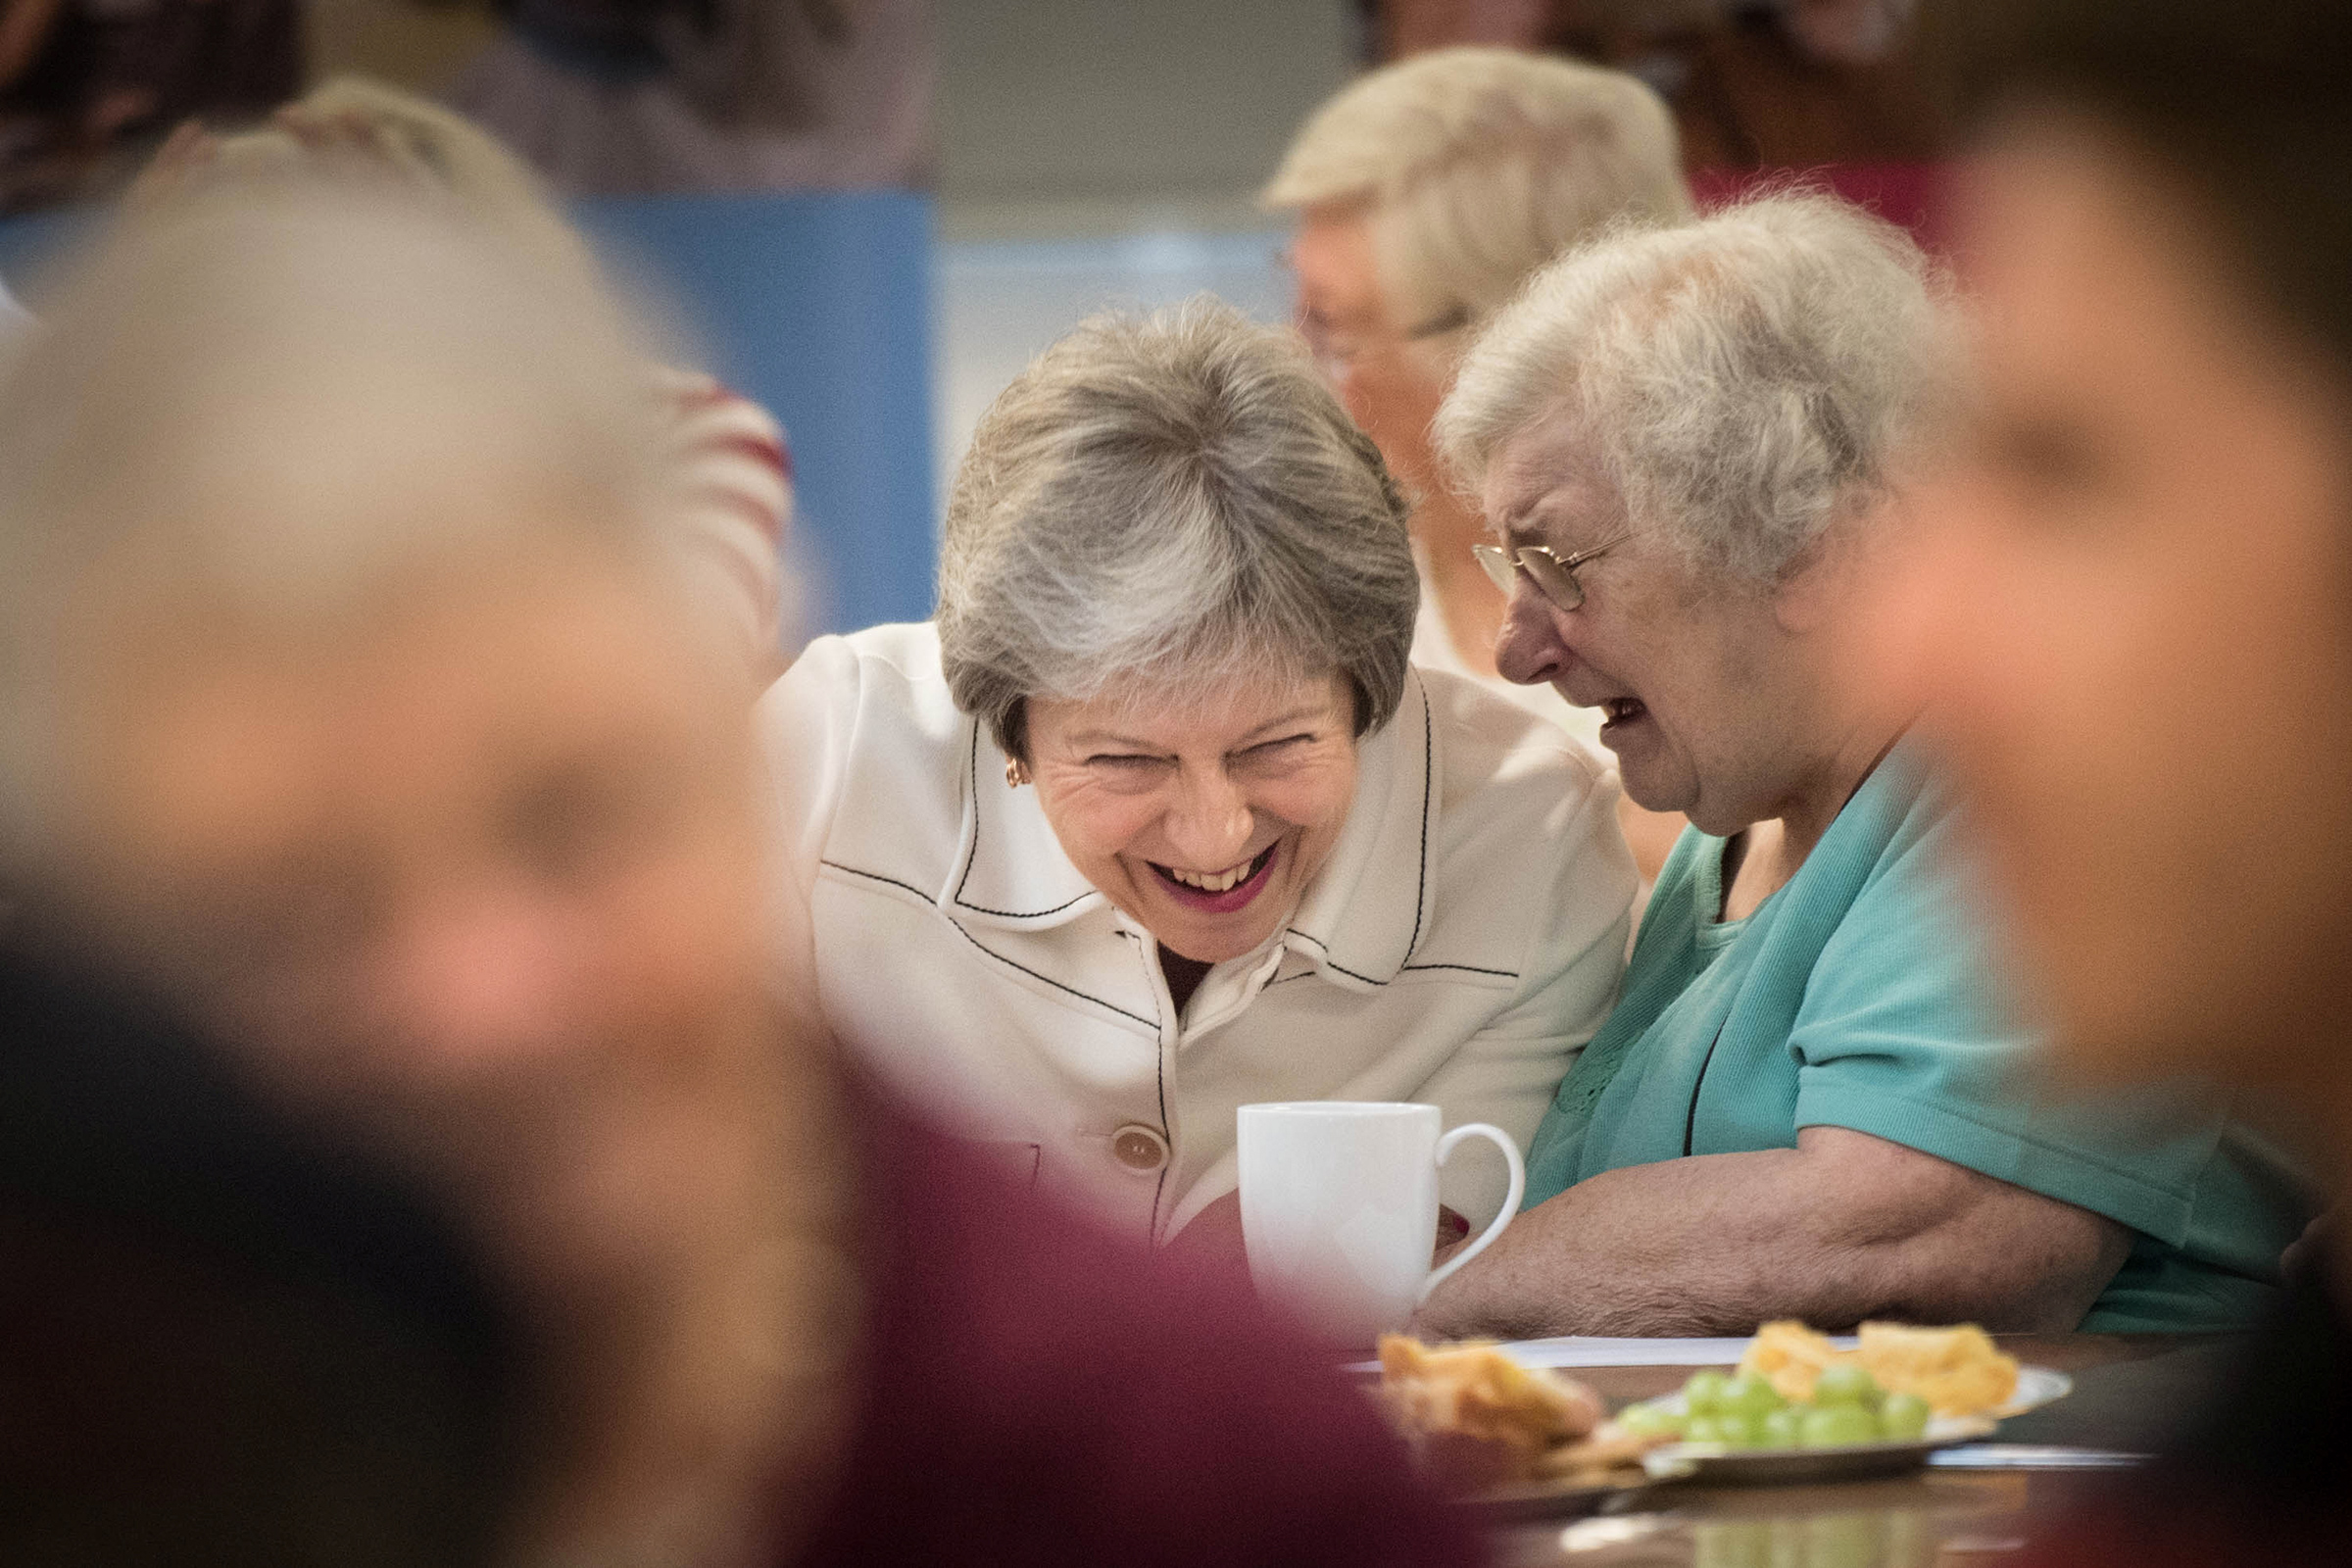 Премьер-министр Великобритании Тереза Мэй на благотворительном мероприятии, посвященном борьбе с одиночеством, 15 октября 2018 года
